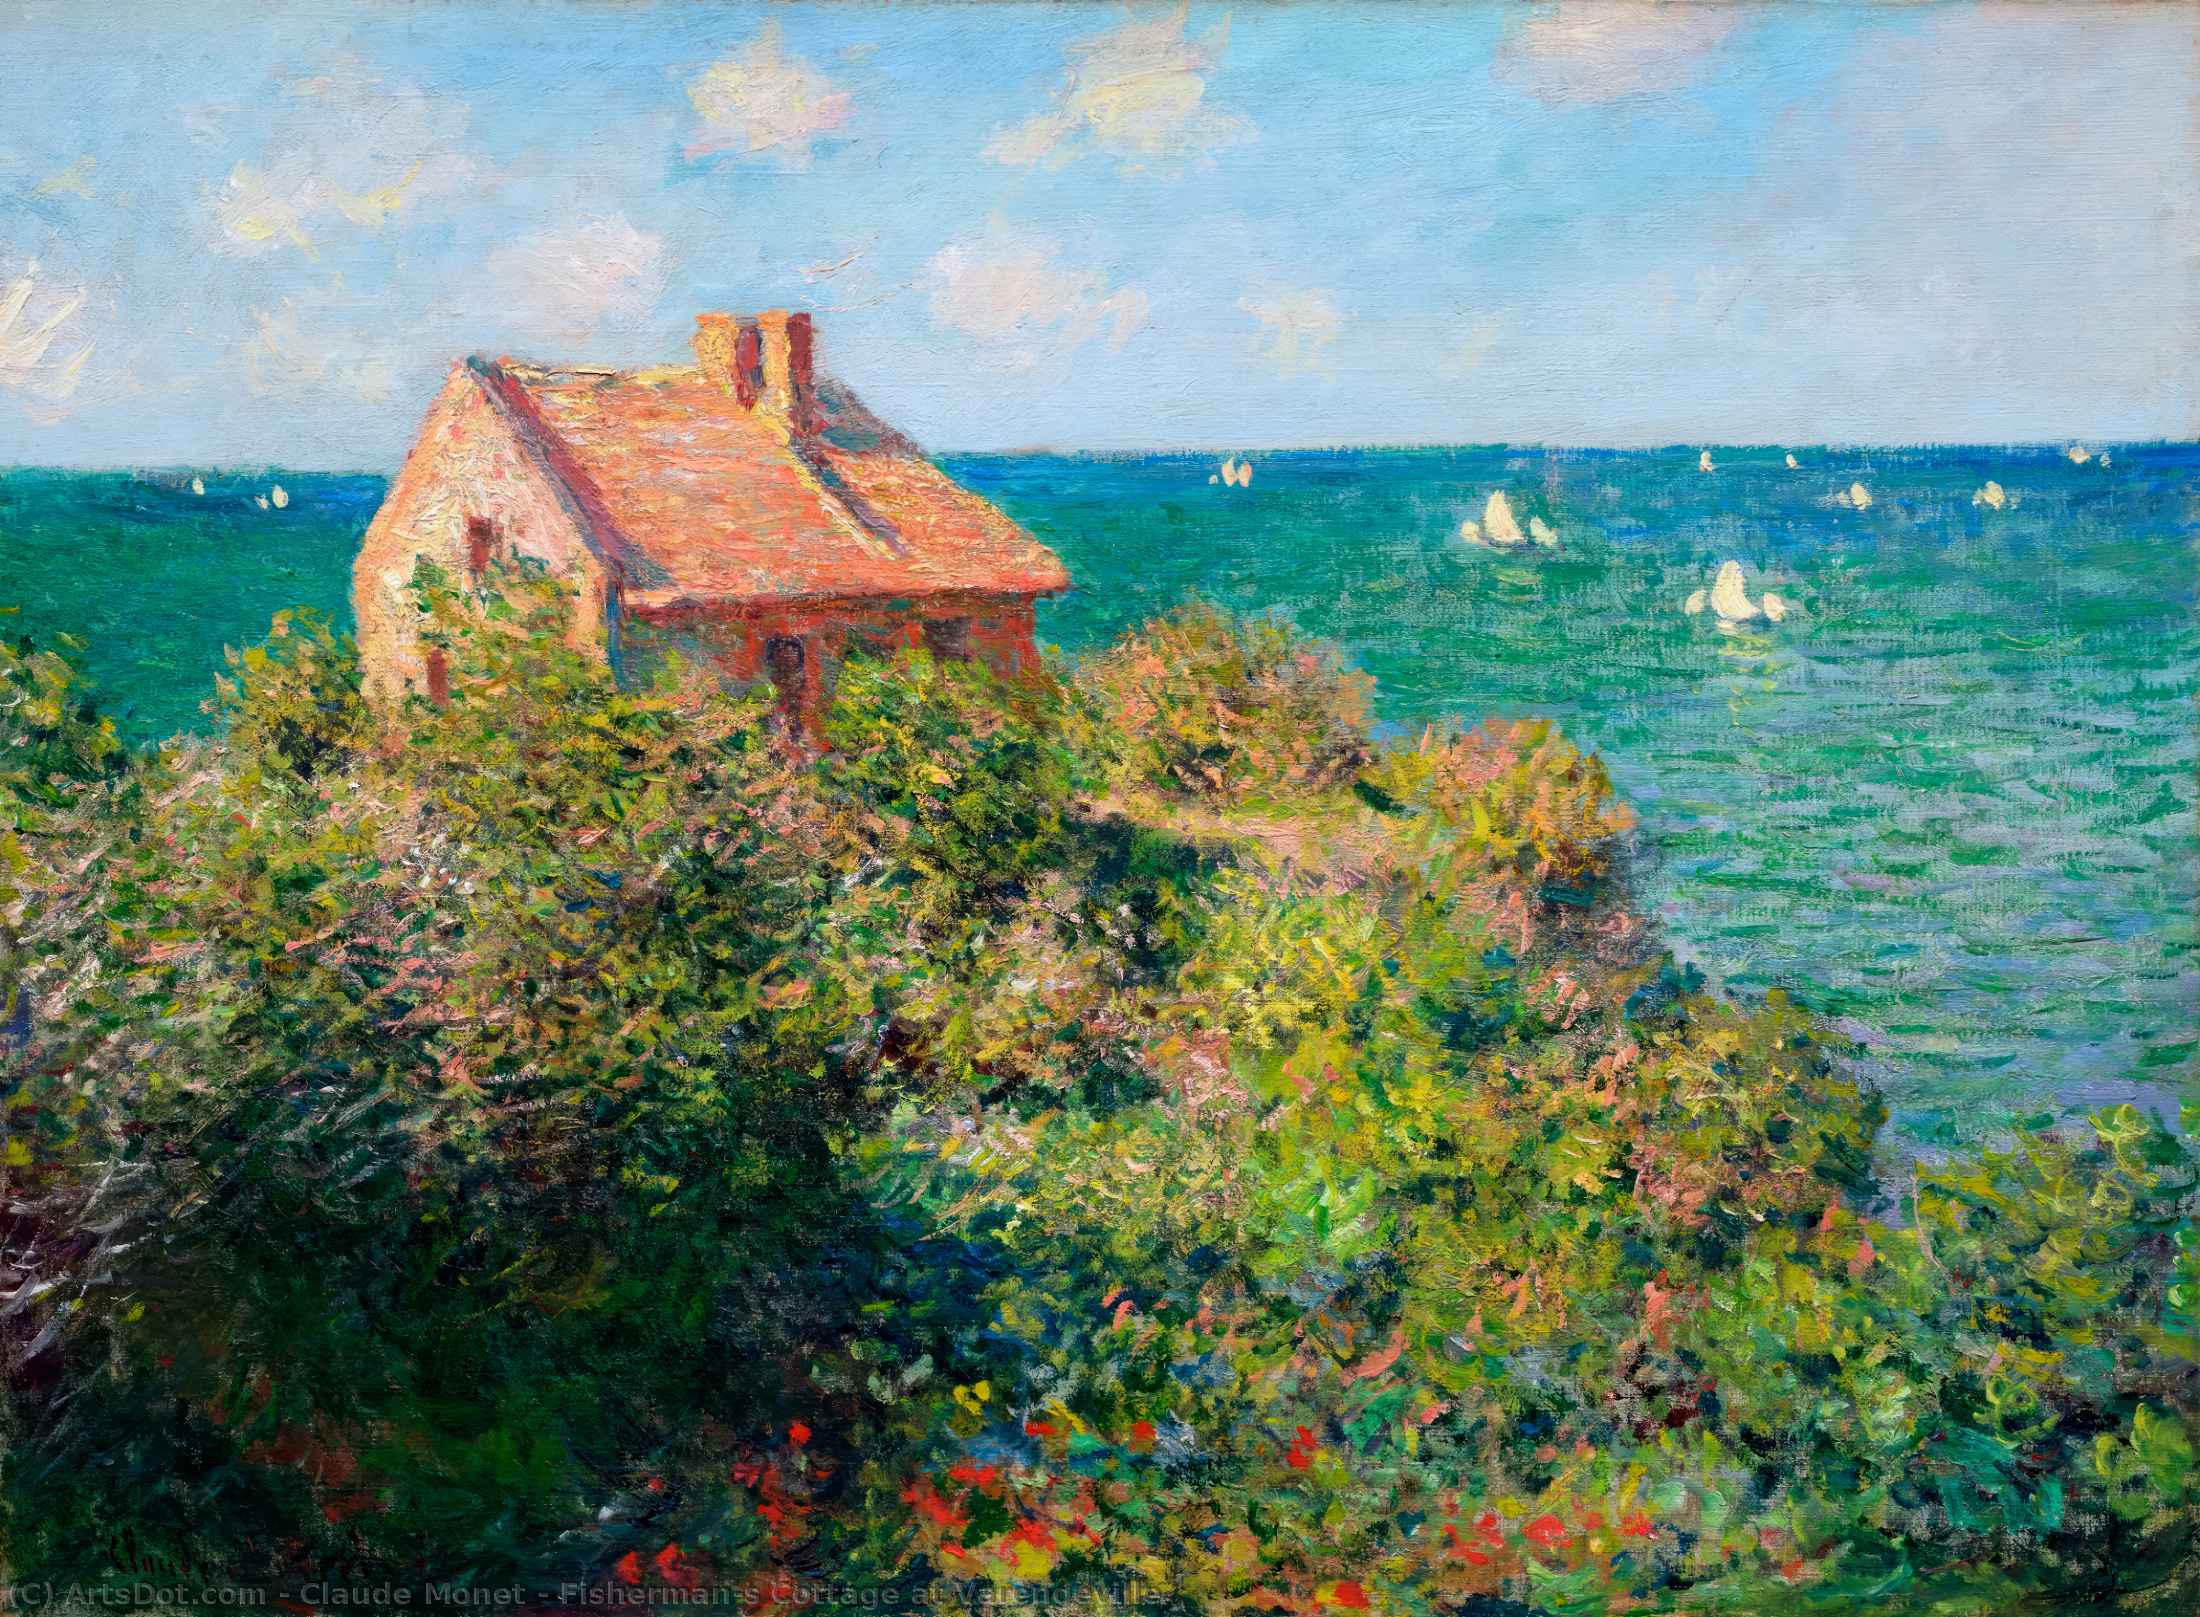 WikiOO.org - Enciklopedija likovnih umjetnosti - Slikarstvo, umjetnička djela Claude Monet - Fisherman's Cottage at Varengeville